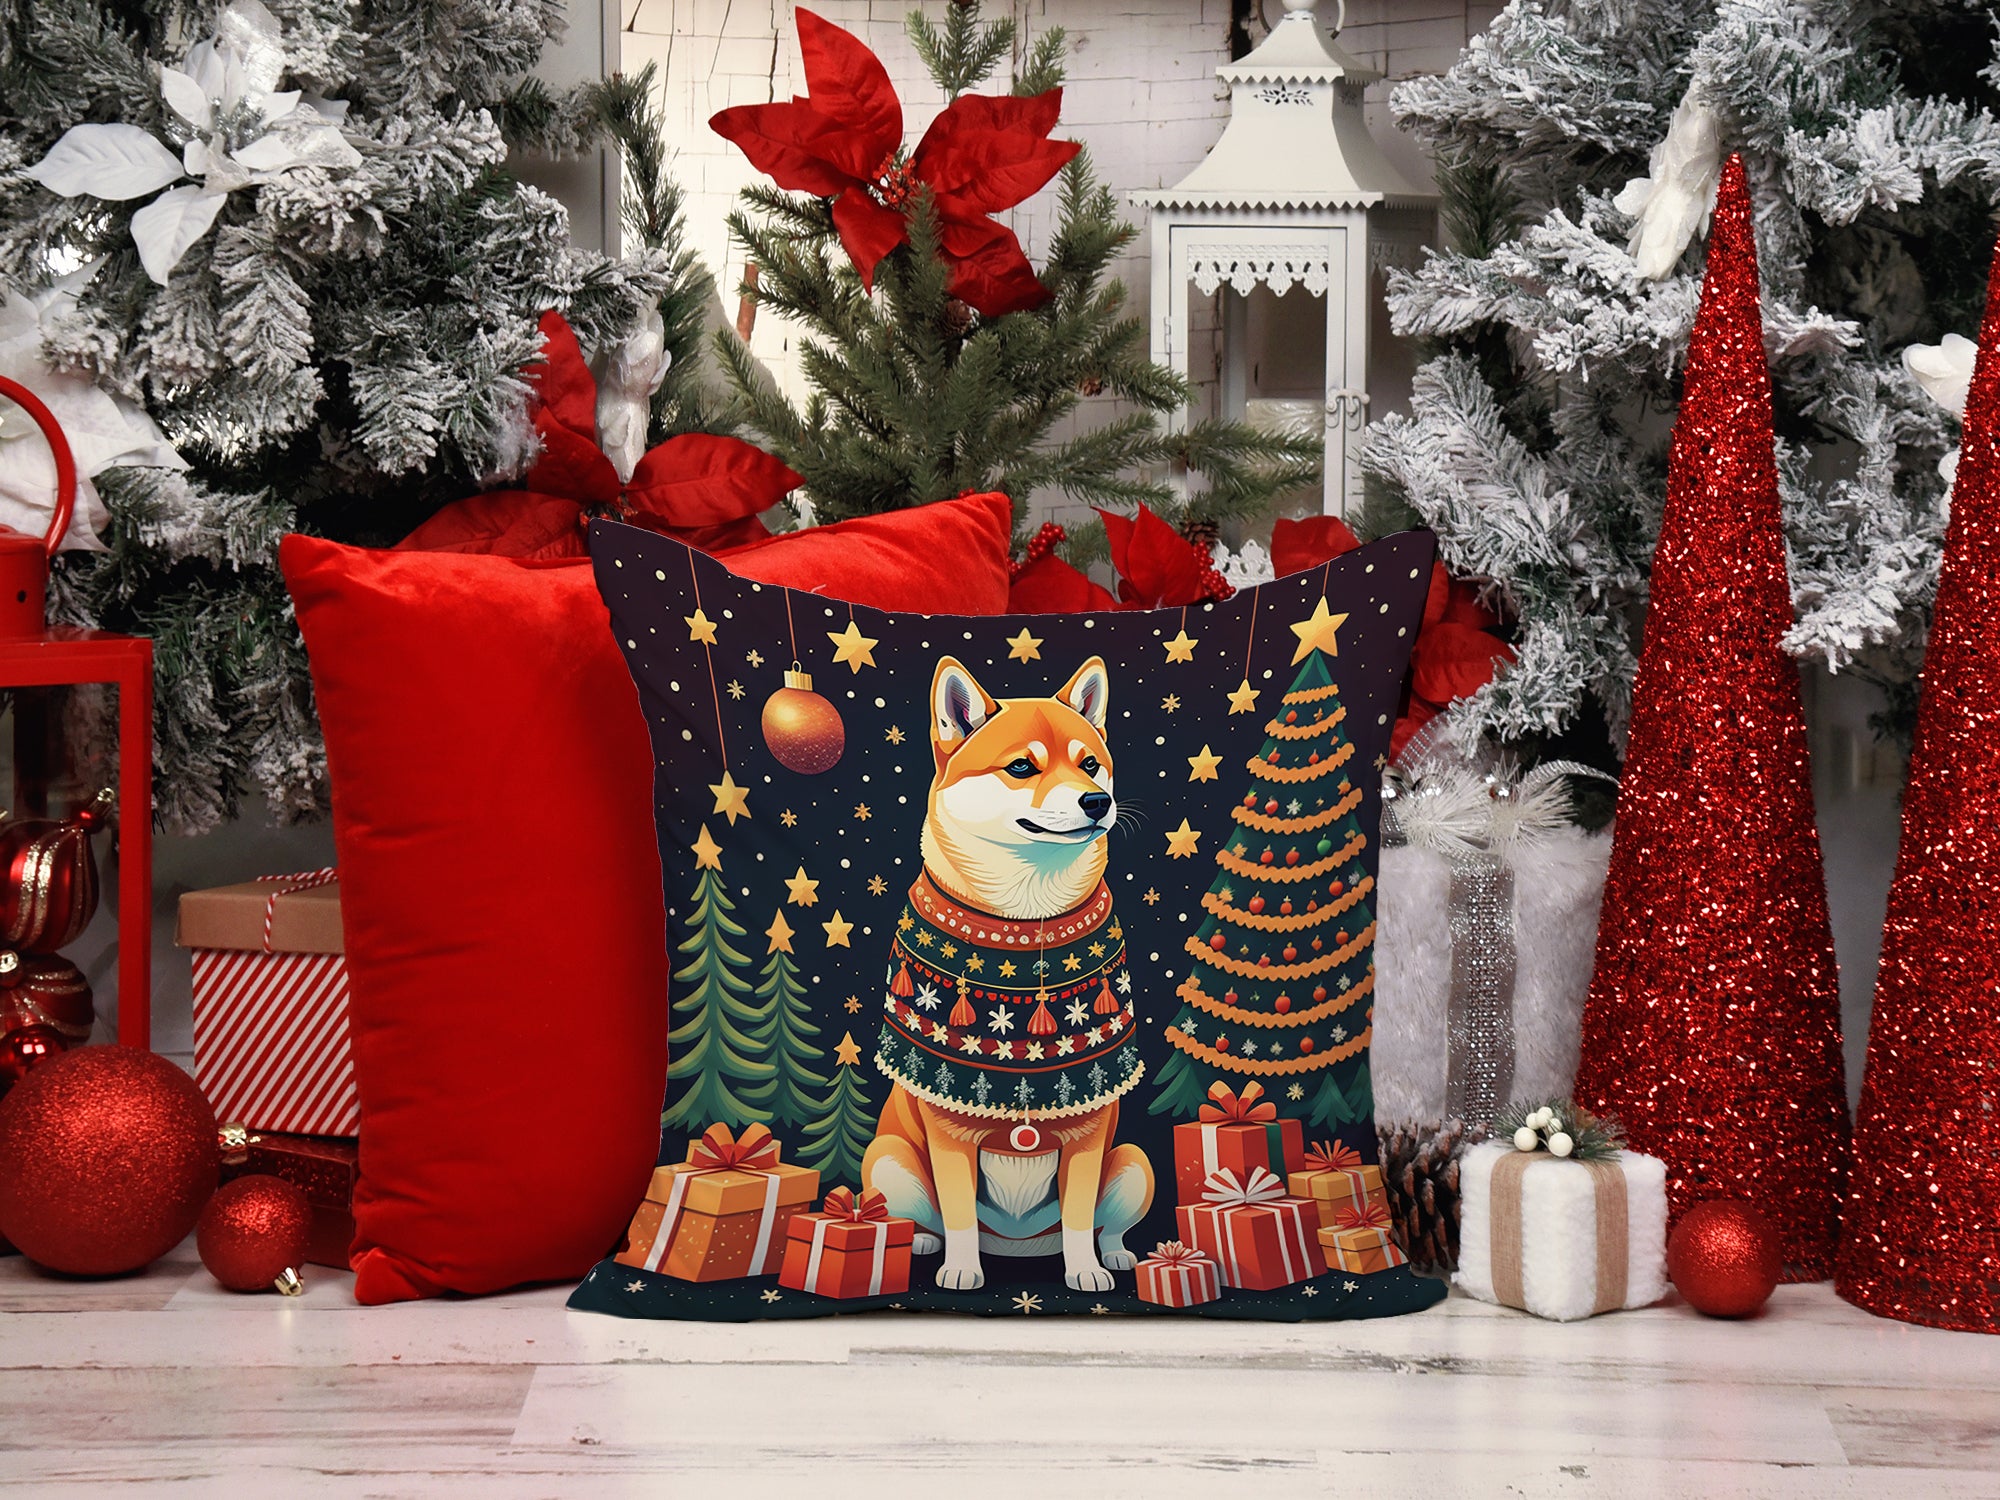 Shiba Inu Christmas Fabric Decorative Pillow  the-store.com.